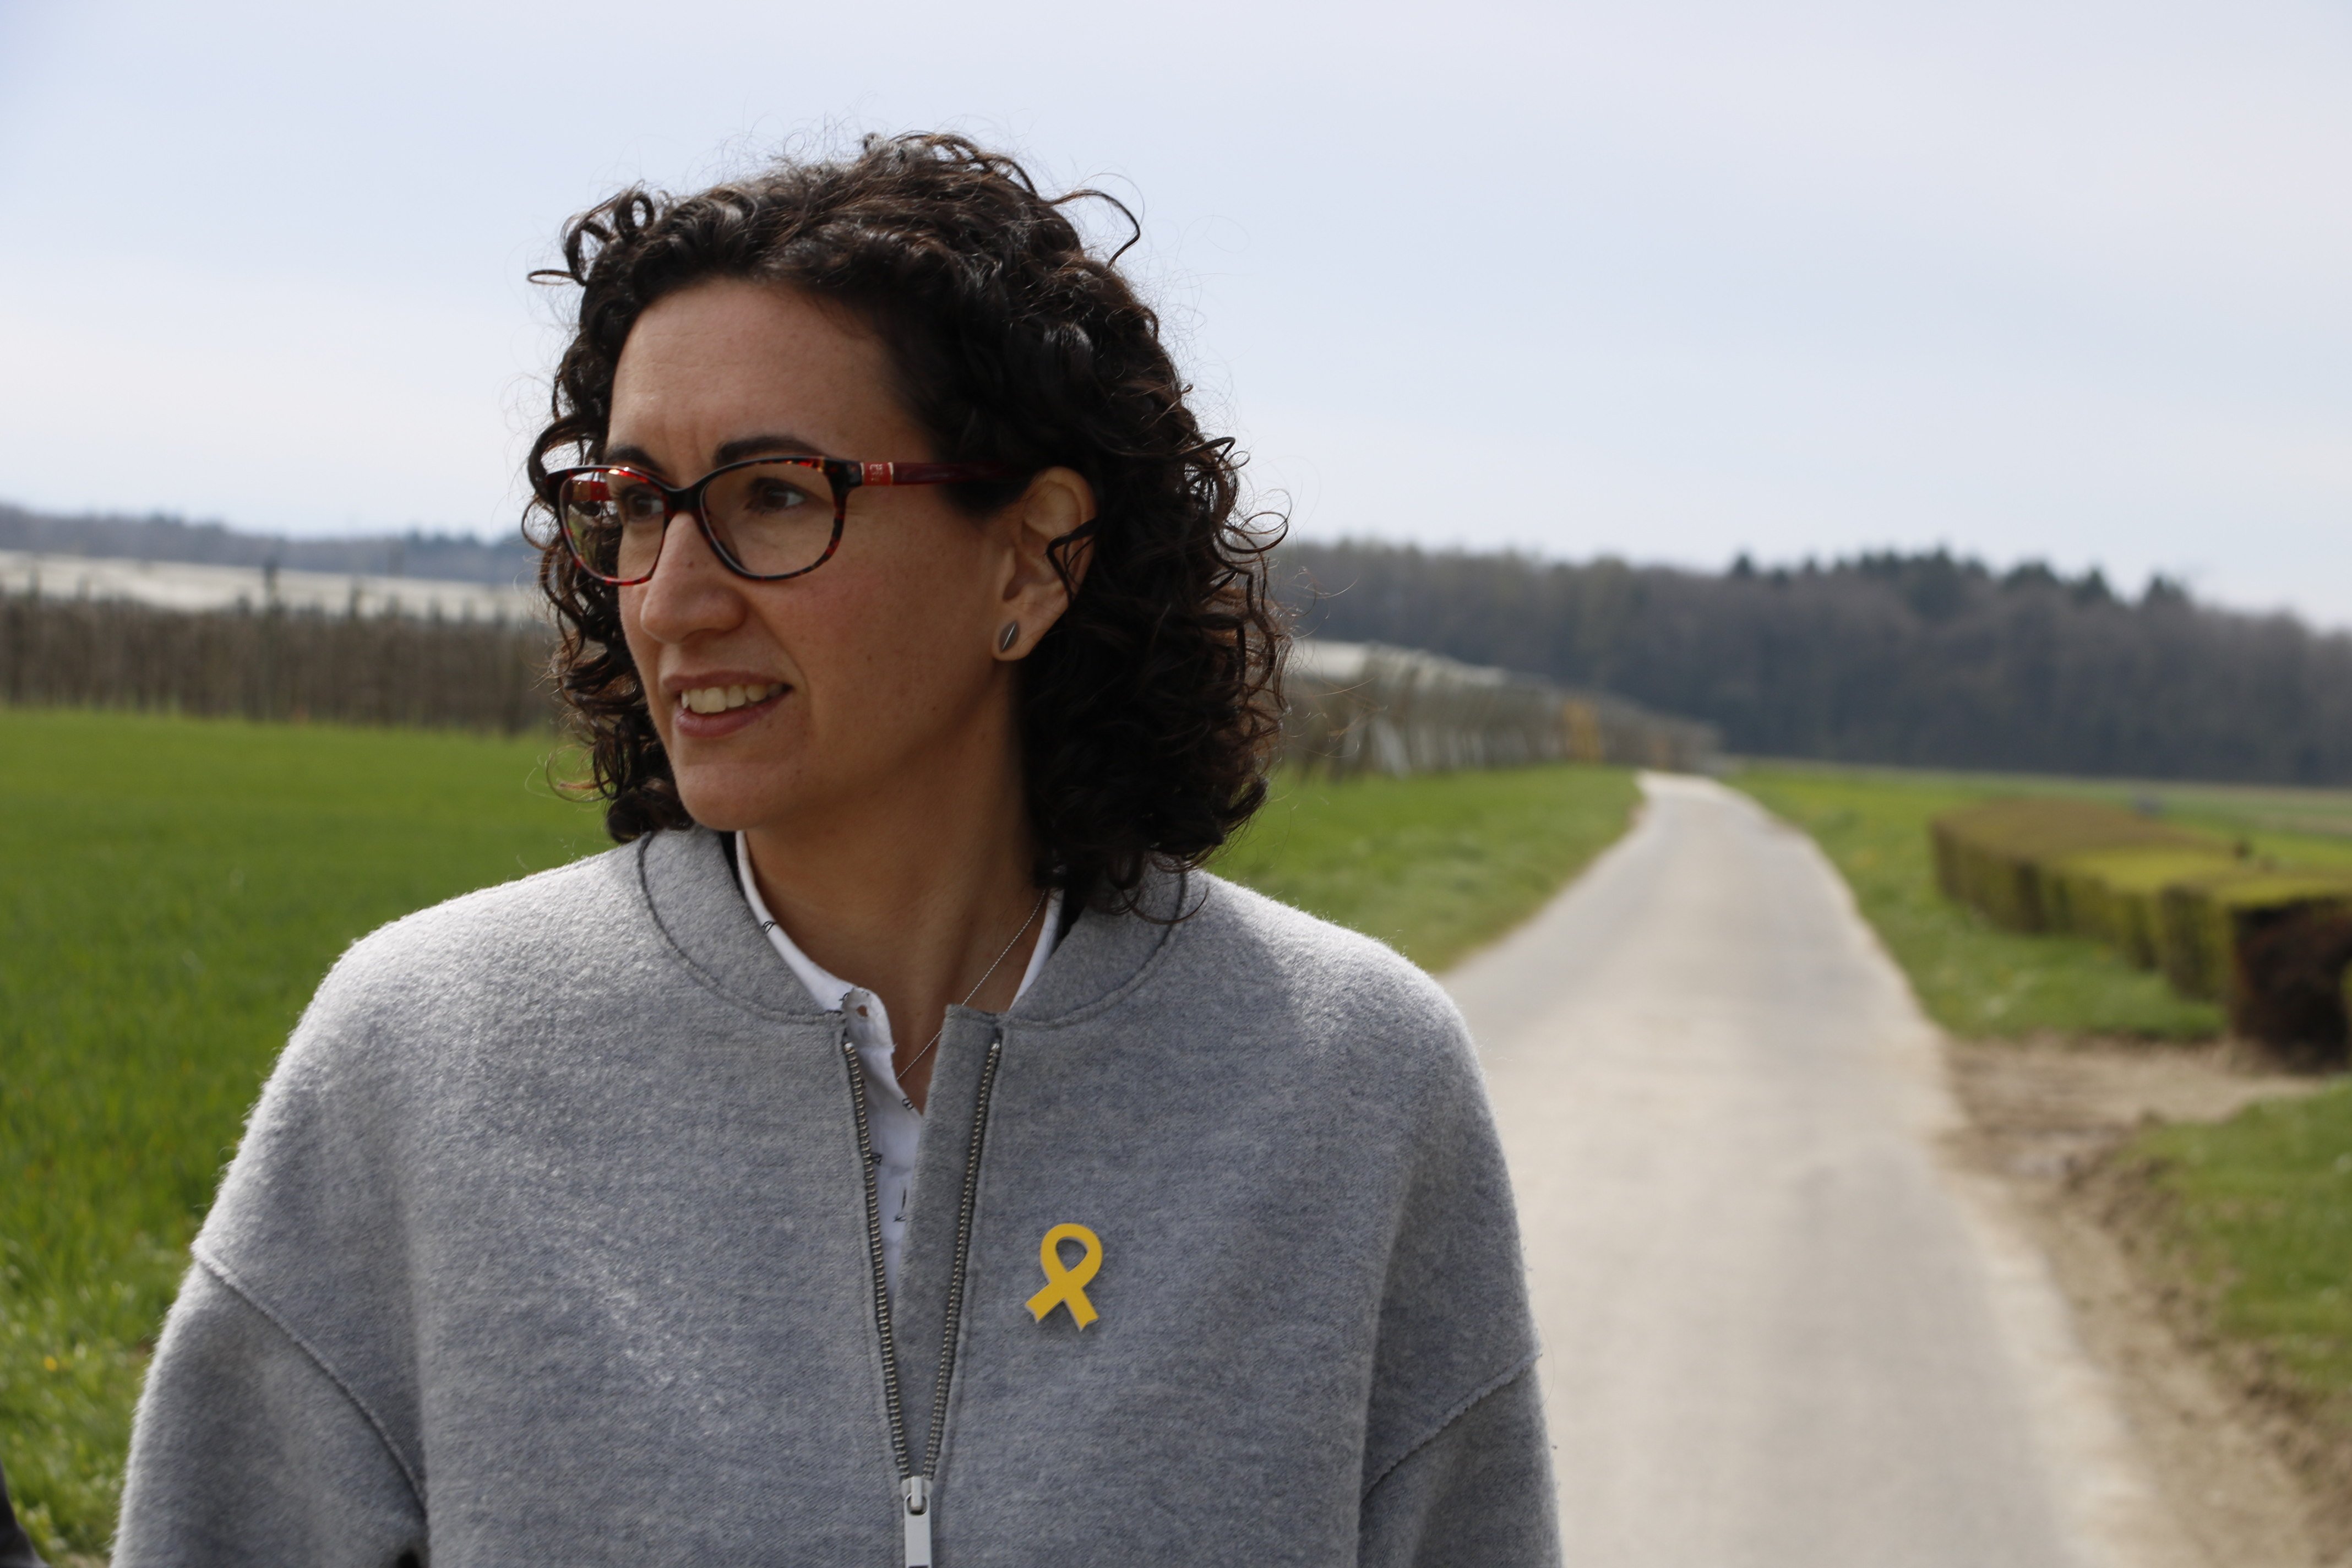 Empieza en Osona una campaña de solidaridad con Marta Rovira